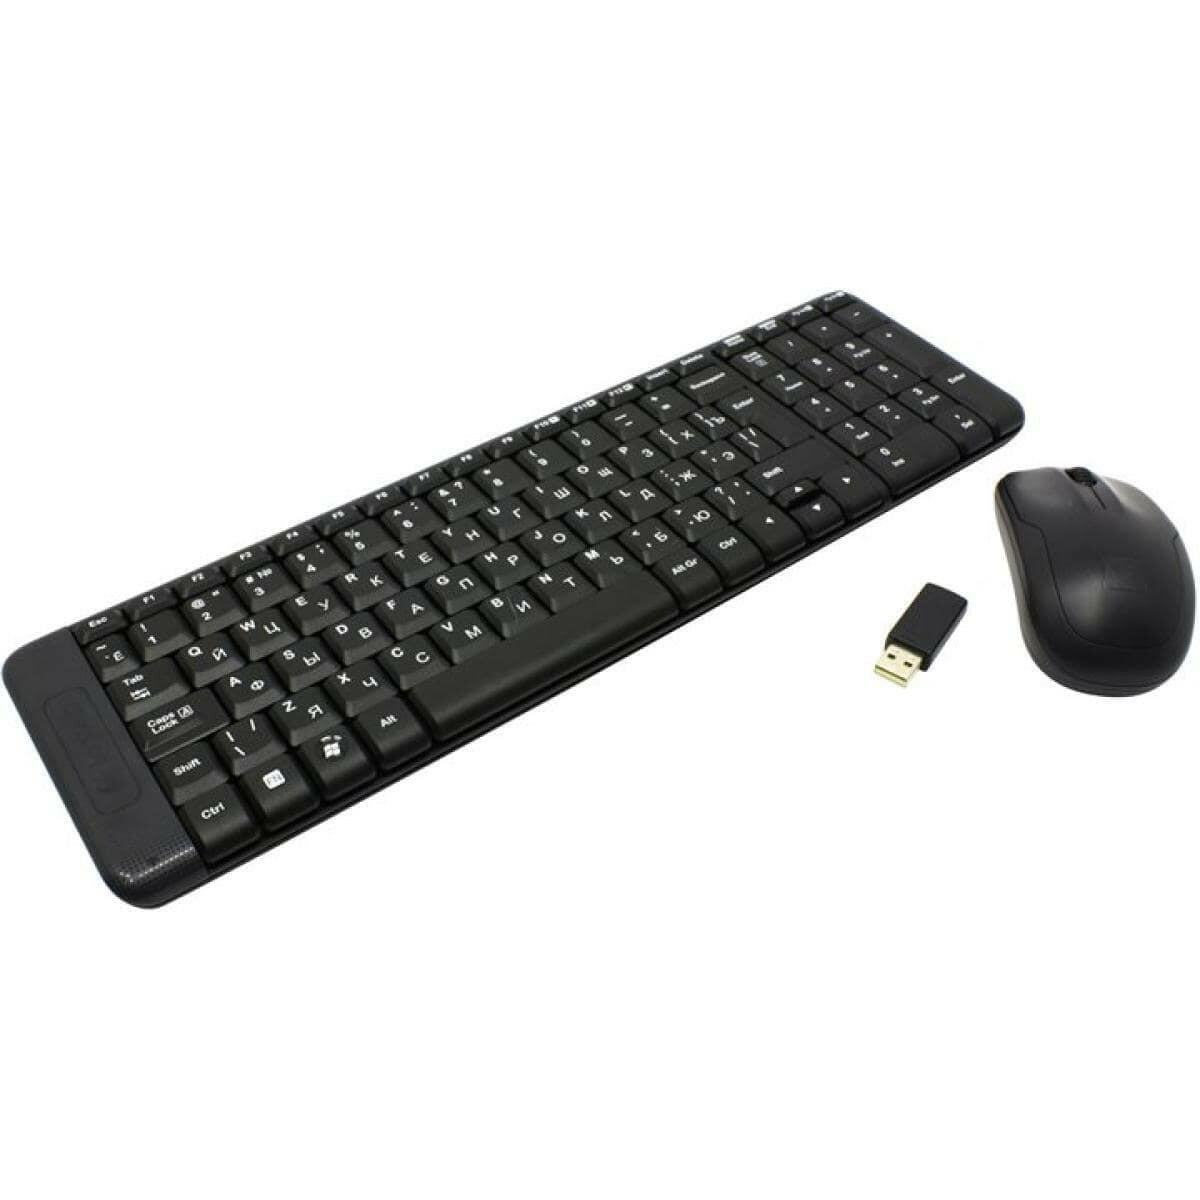 LOGITECH OFFICE KEYBOARD Logitech MK220 Compact 2.4GHz Wireless Black Keyboard & Mouse Combo (عربي)